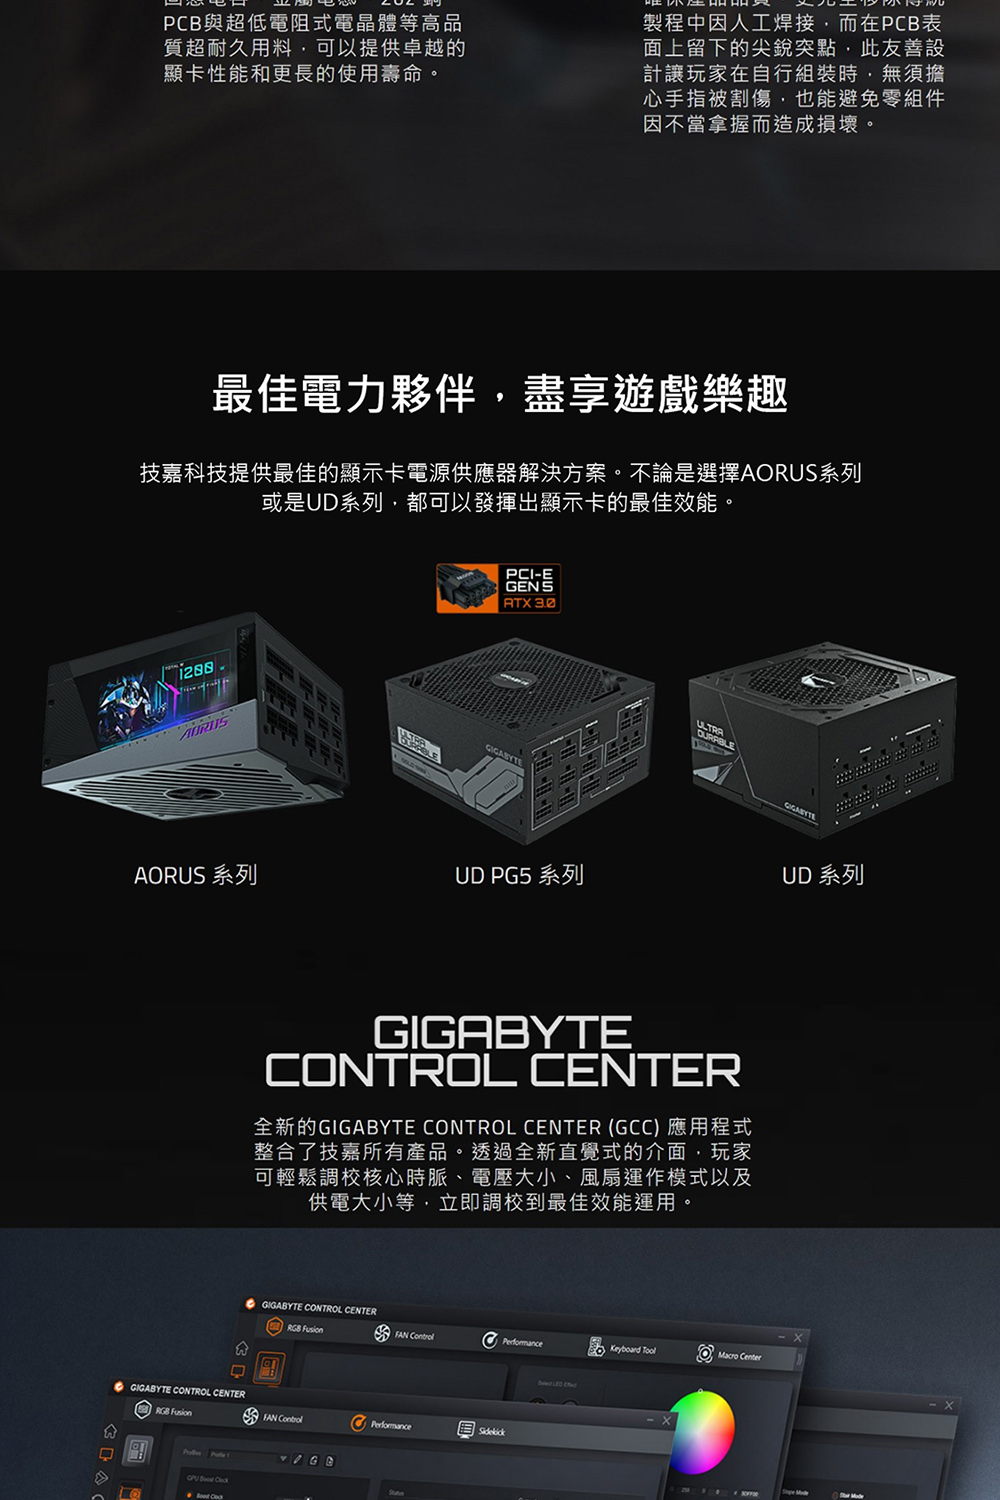 全新的GIGABYTE CONTROL CENTER GCC 應用程式